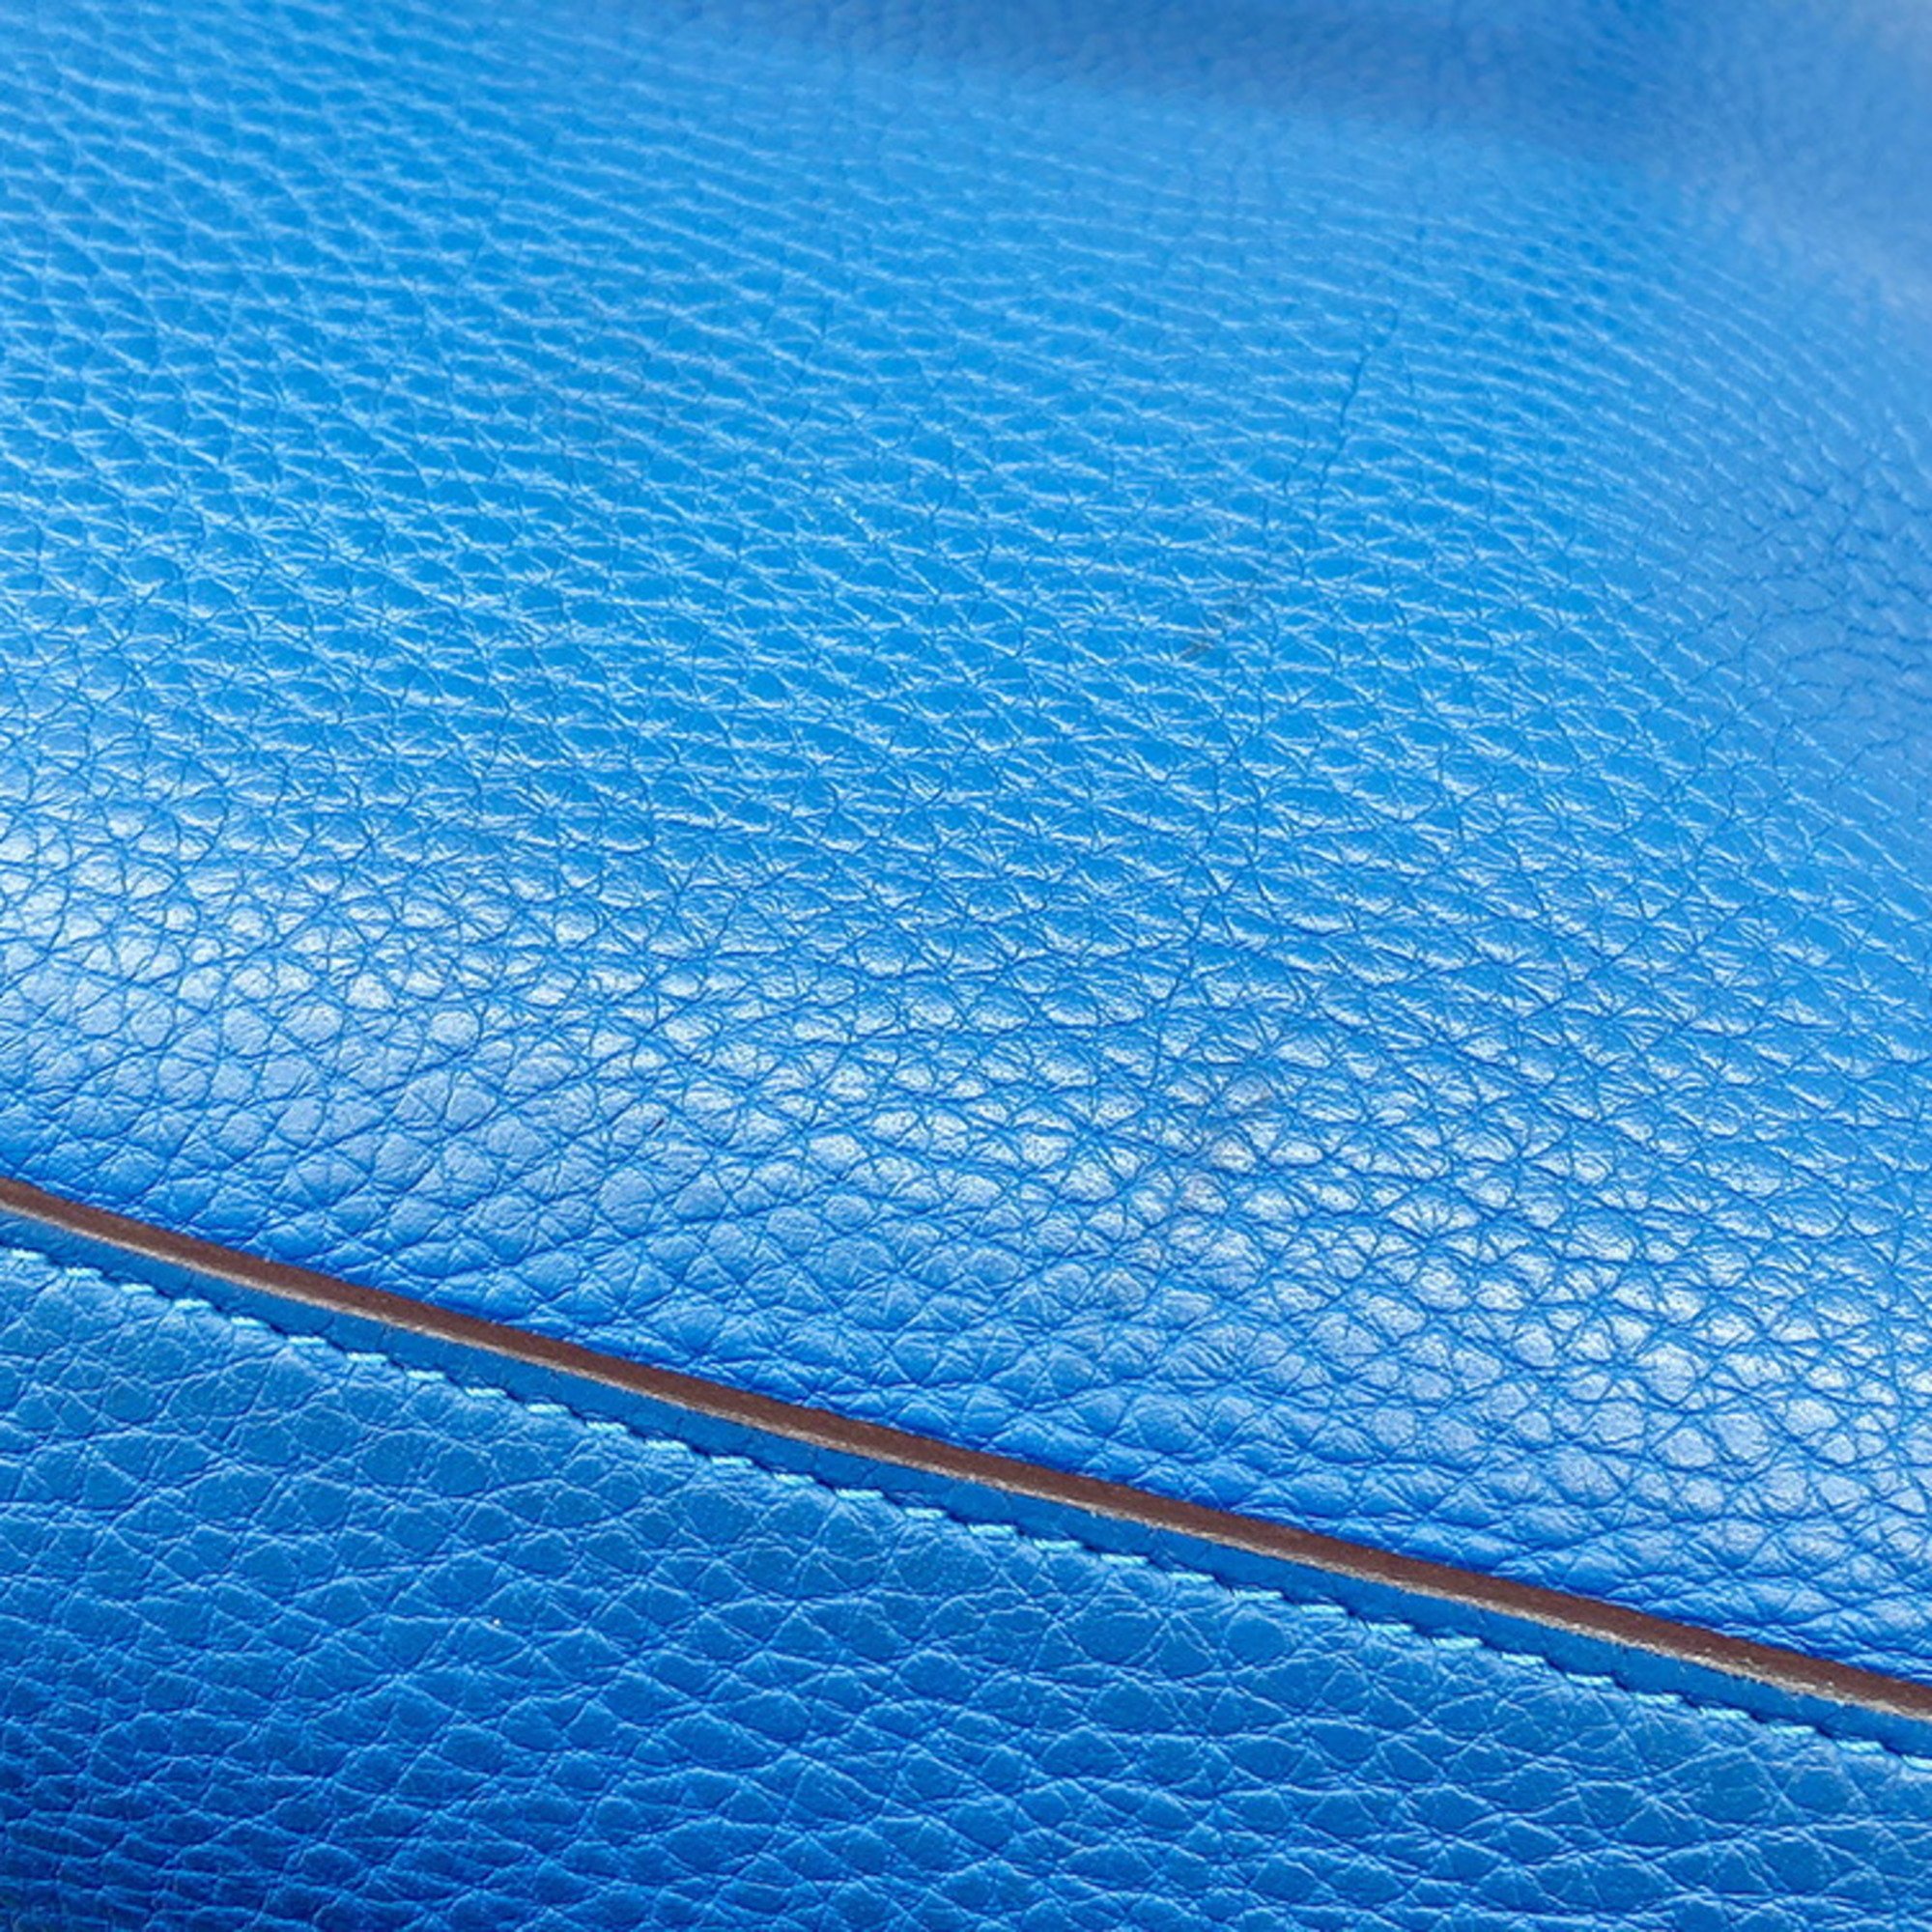 HERMES Atlas 35 Taurillon Clemence Blue Handbag □P Engraved Leather Women's Hand Bag